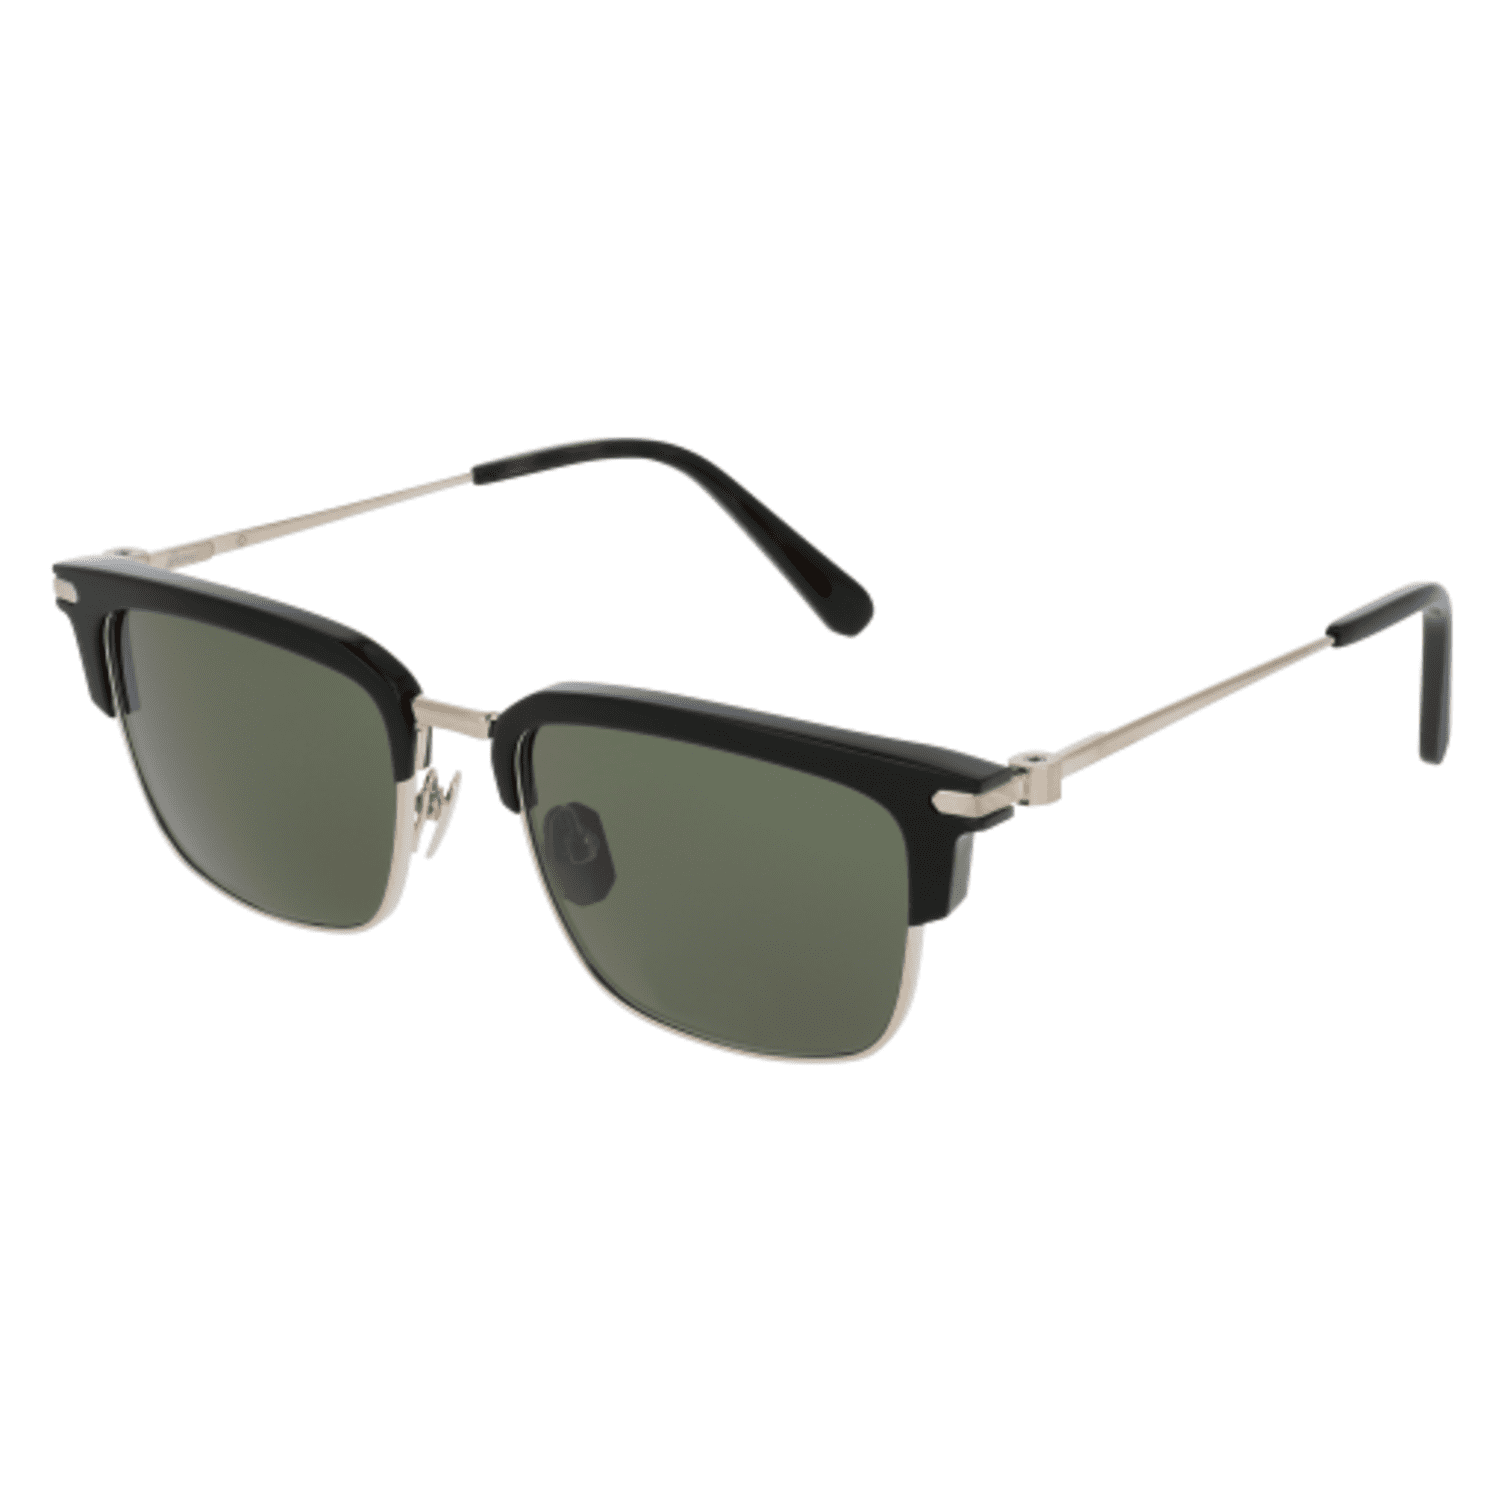 Sunglasses Brioni BR 0039 S 001 BLACK/GREEN GOLD